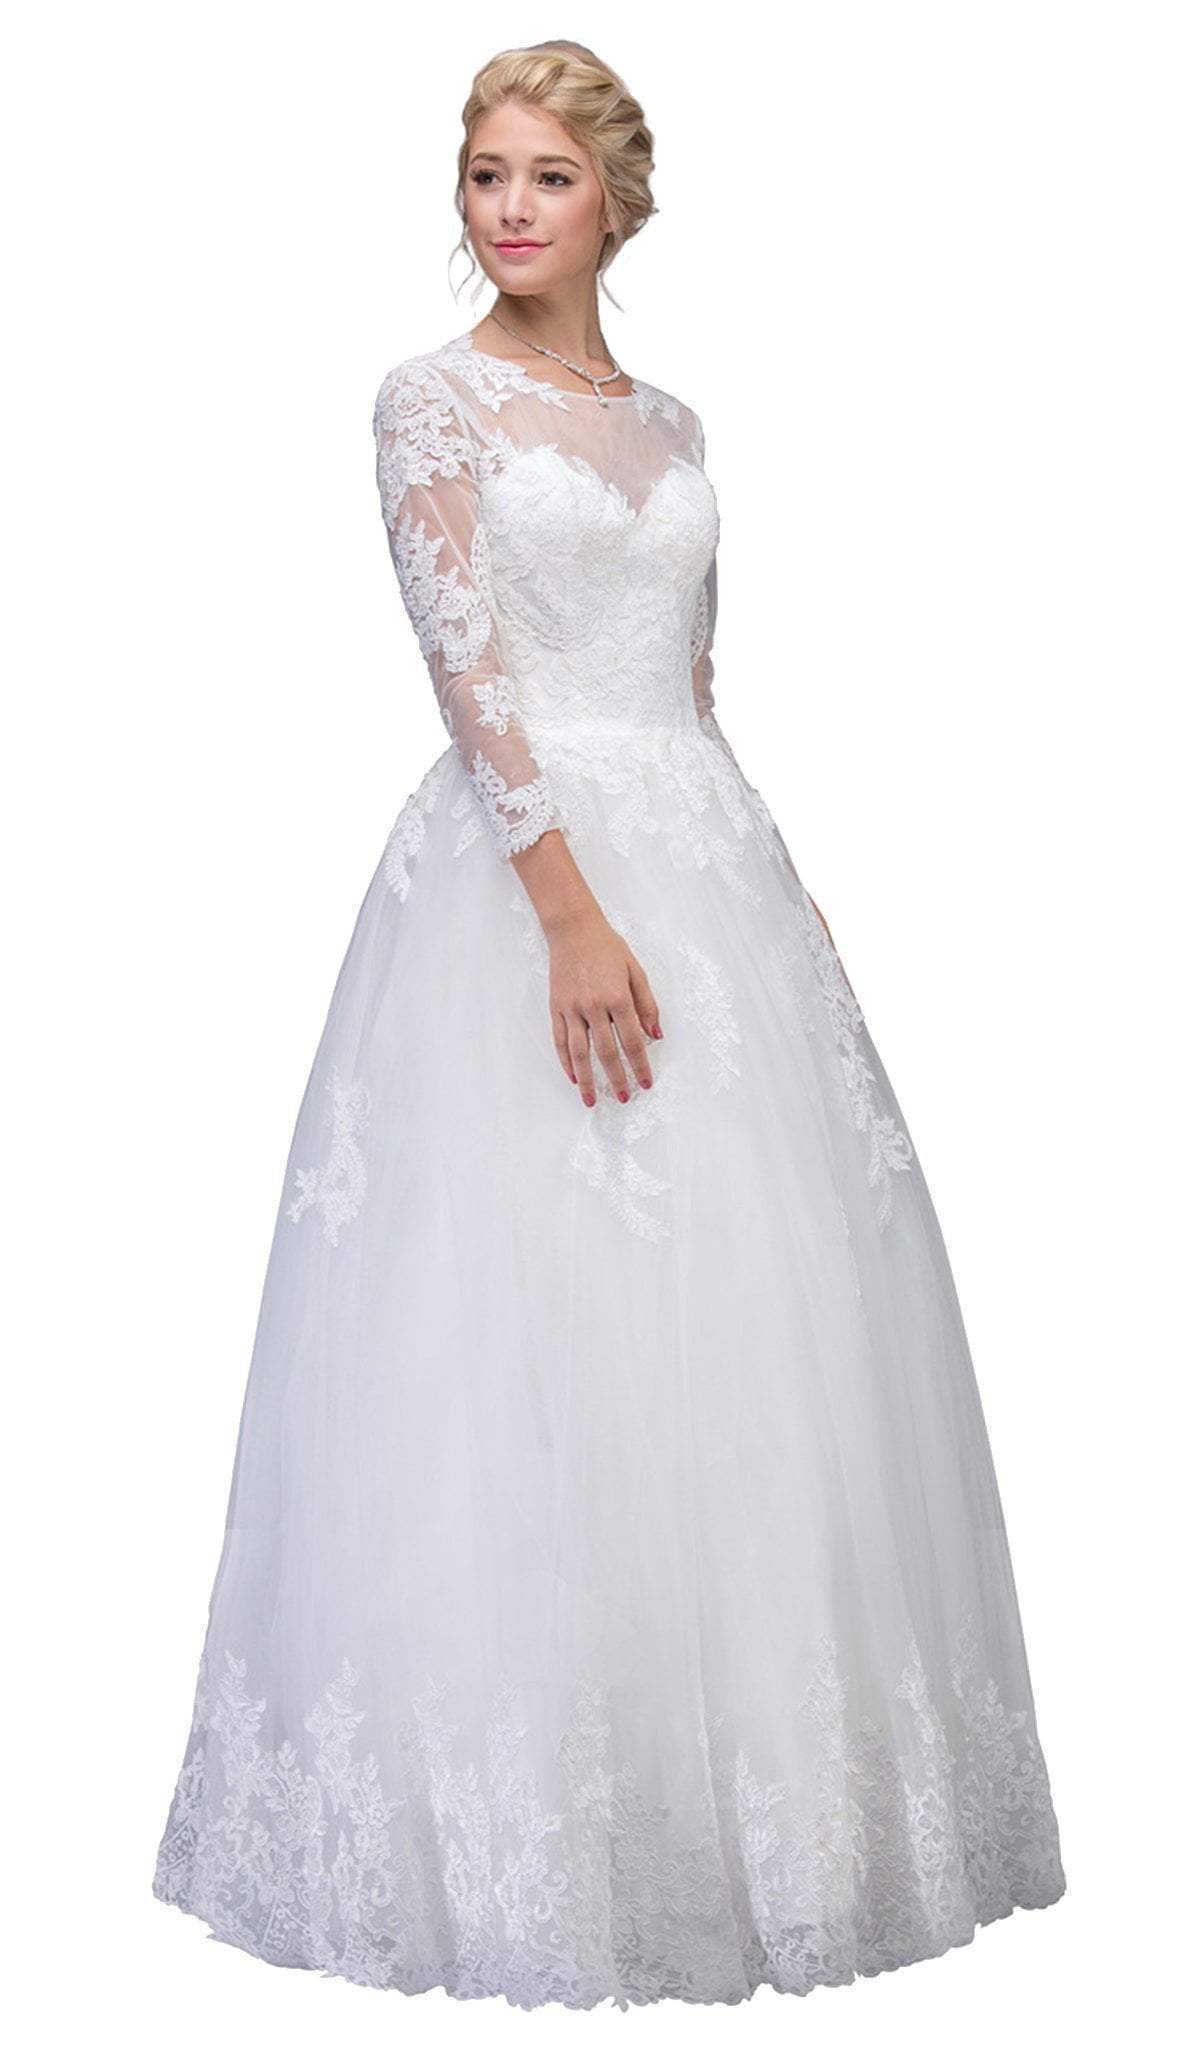 Eureka Fashion Bridal - Lace Long Sleeve Wedding Evening Gown
